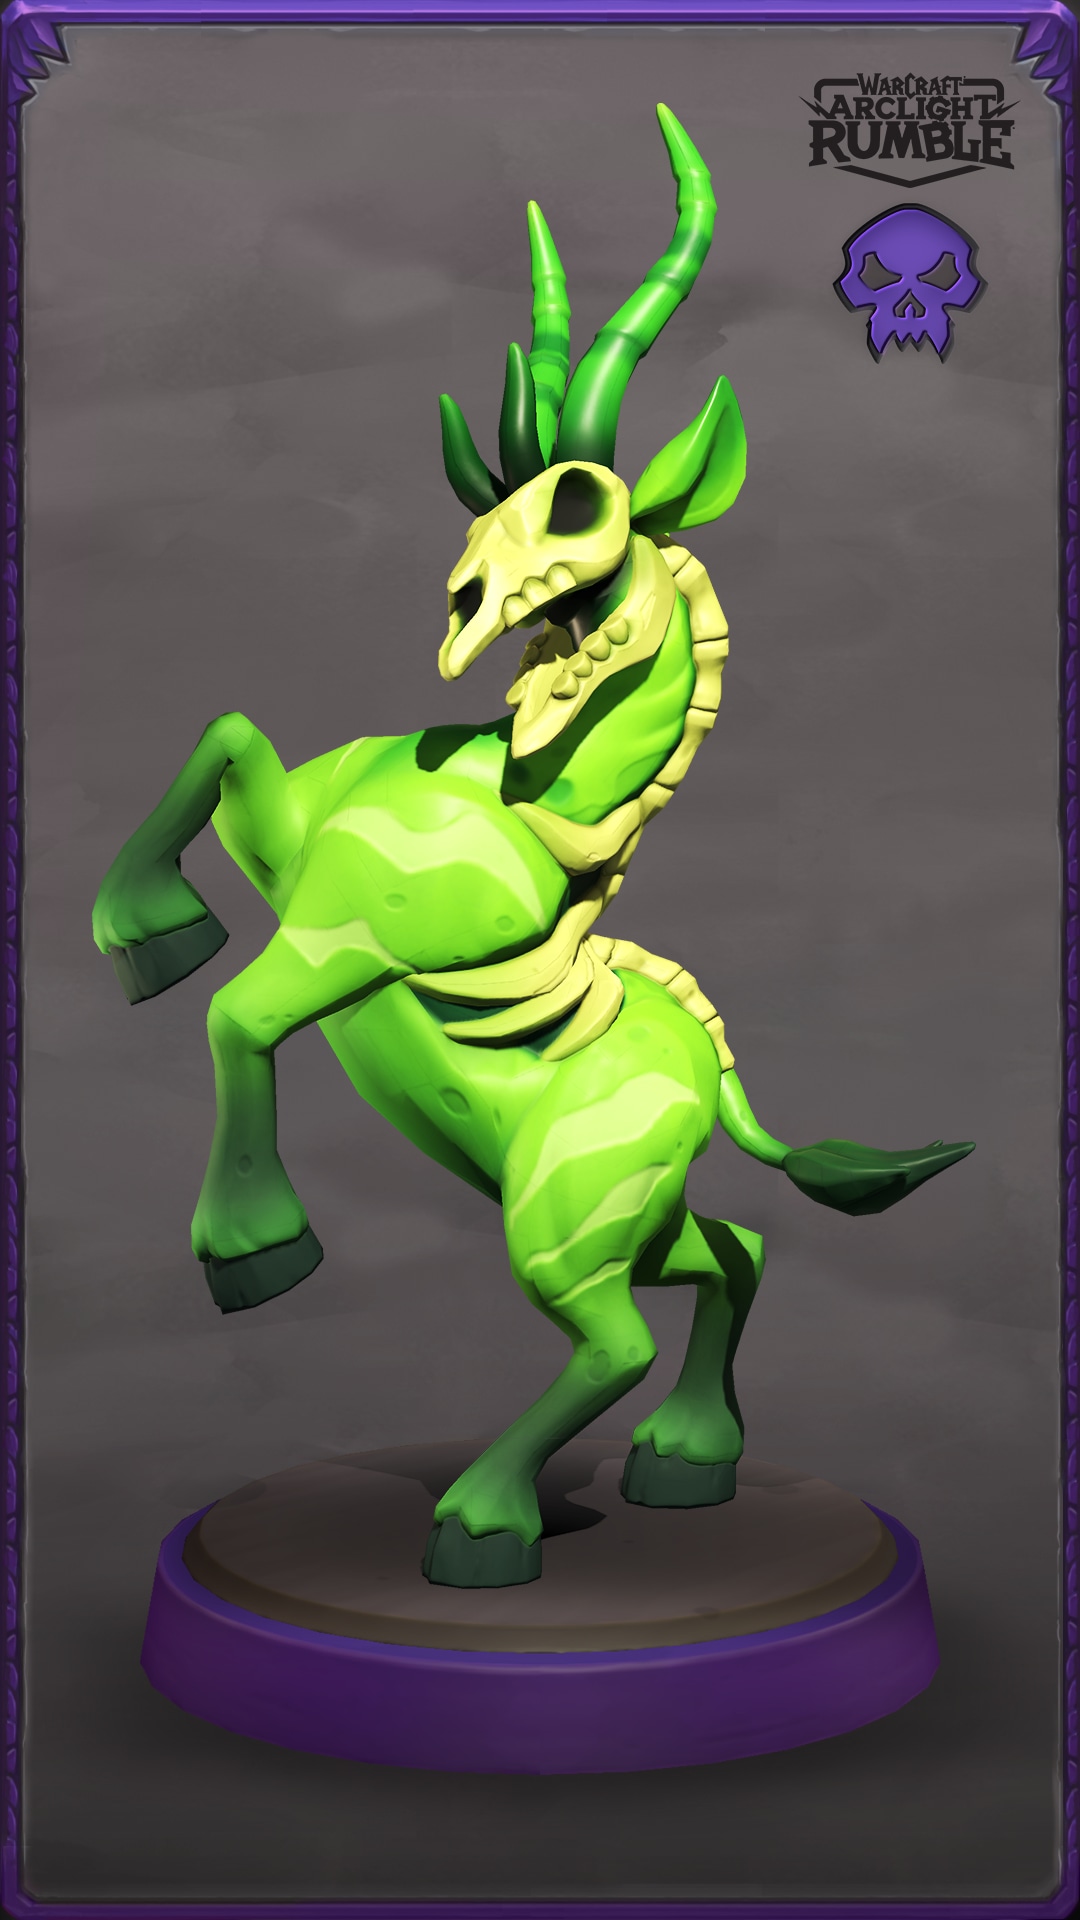 Una gacela enferma verde erguida sobre sus patas traseras